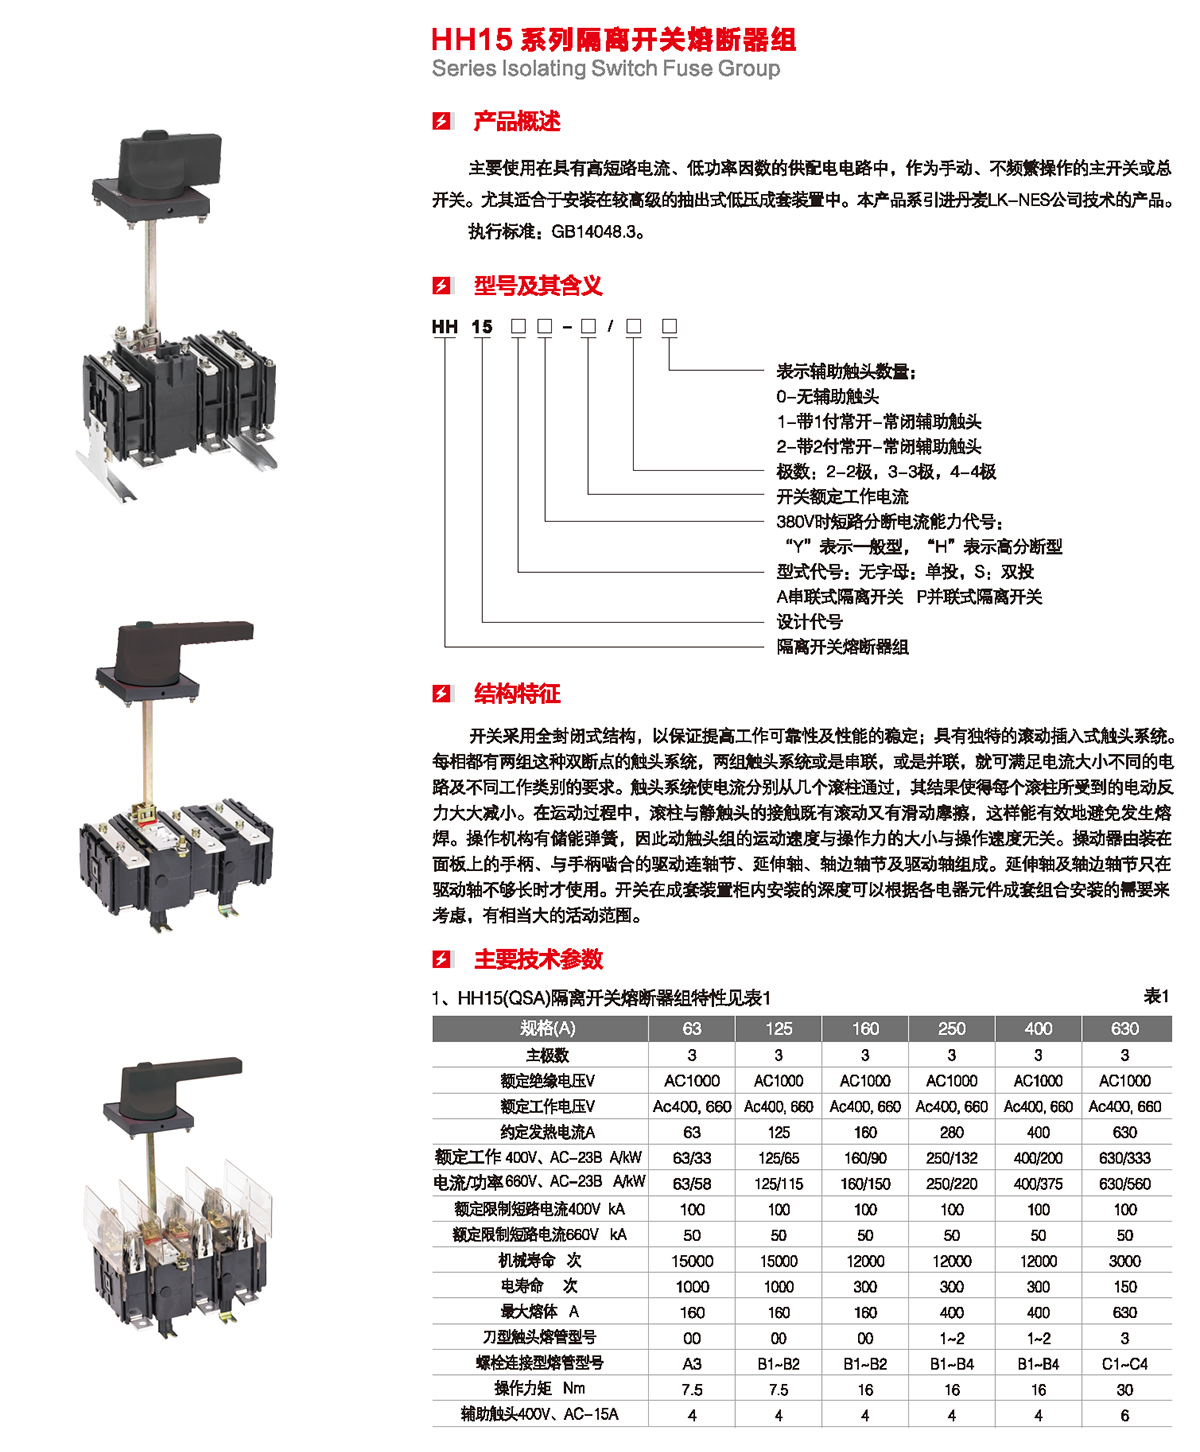 HH15系列隔離開關熔斷器組產品概述、型號含義、結構特征、技術參數